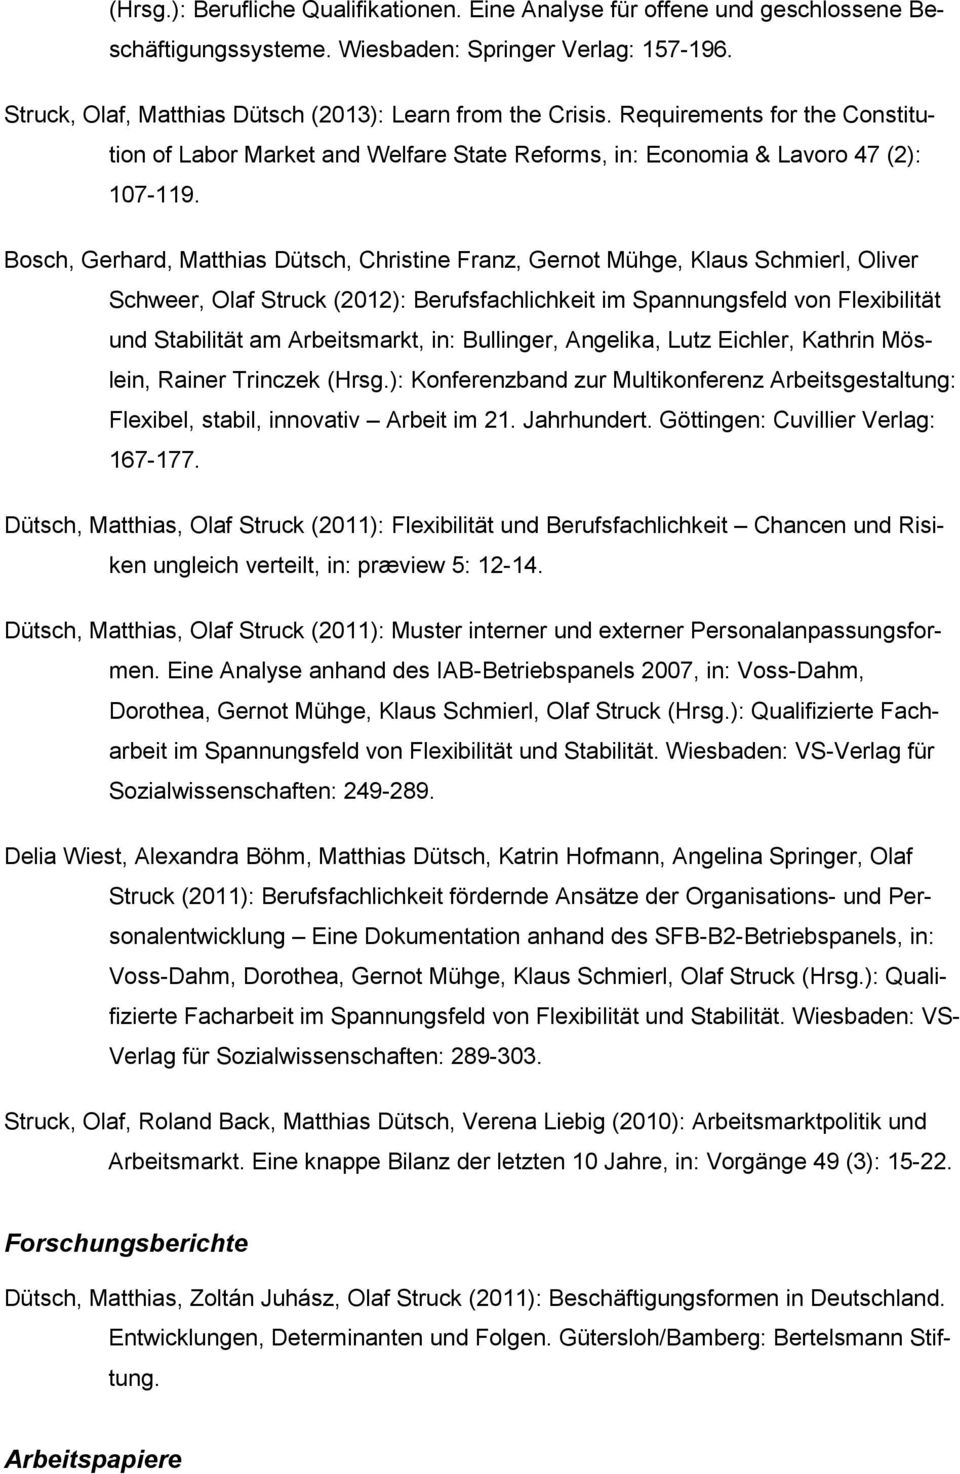 Bosch, Gerhard, Matthias Dütsch, Christine Franz, Gernot Mühge, Klaus Schmierl, Oliver Schweer, Olaf (2012): Berufsfachlichkeit im Spannungsfeld von Flexibilität und Stabilität am Arbeitsmarkt, in: